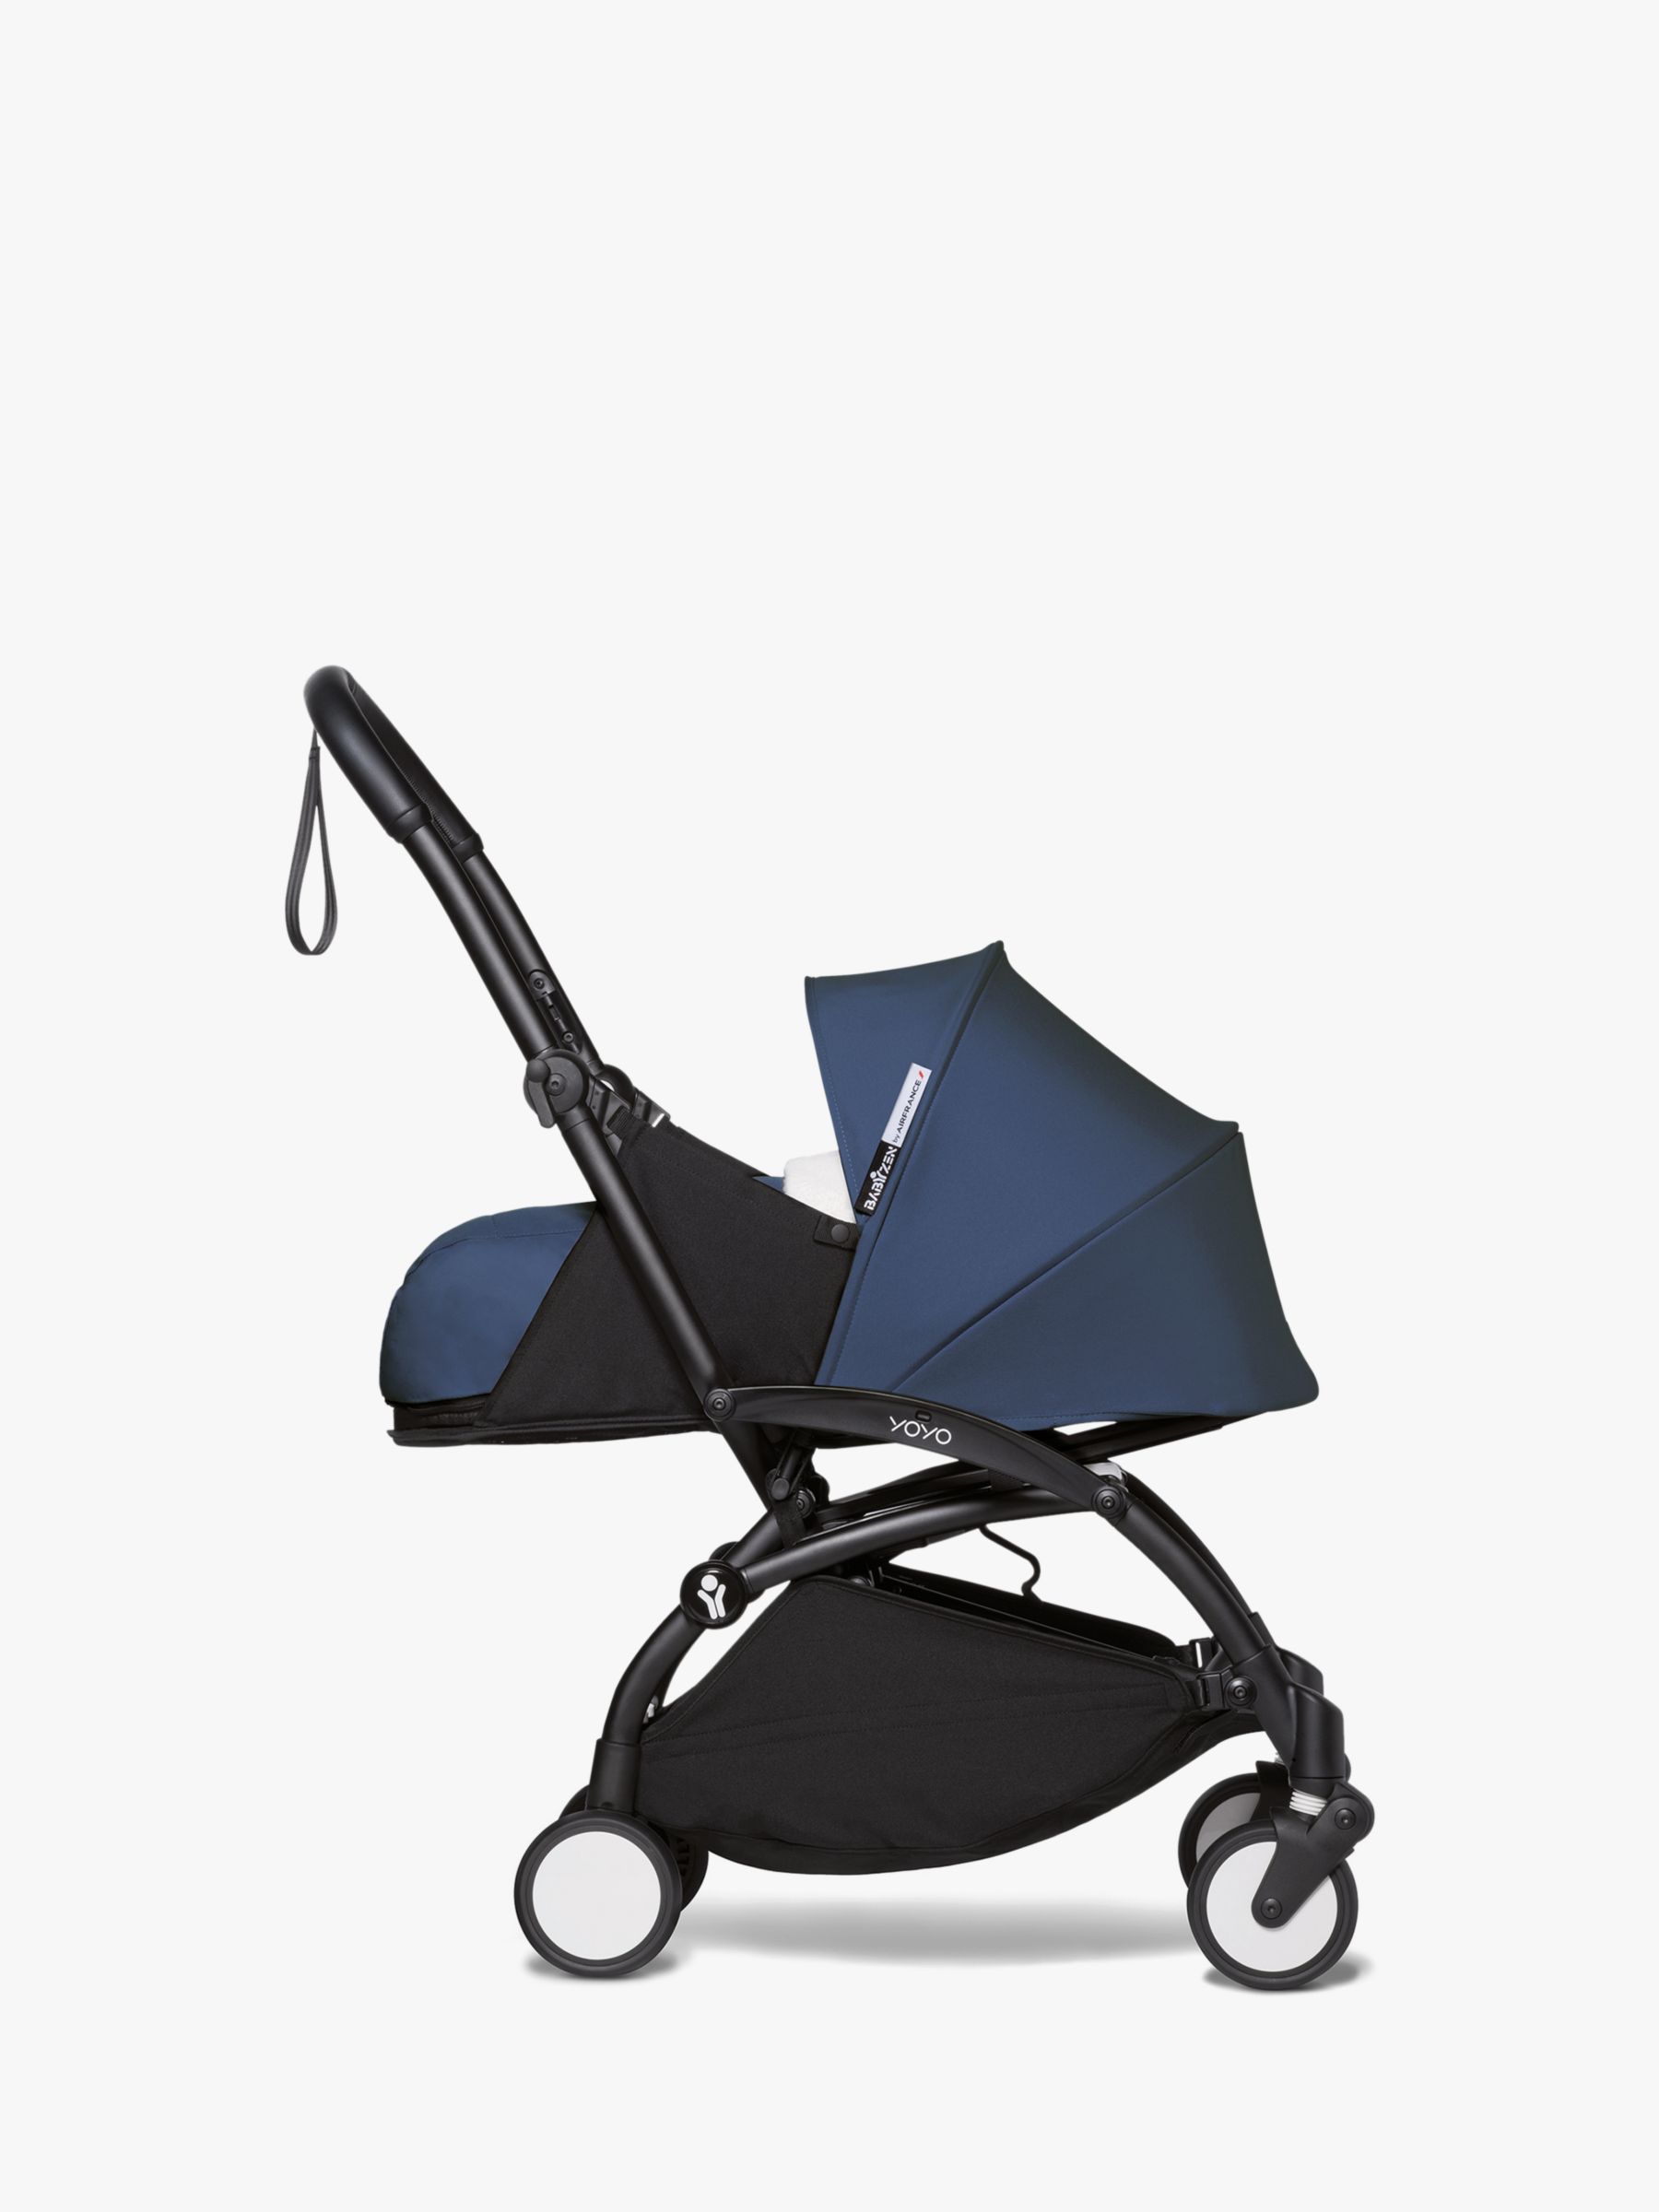 Babyzen YOYO² 6+ Stroller Bundle by Air France